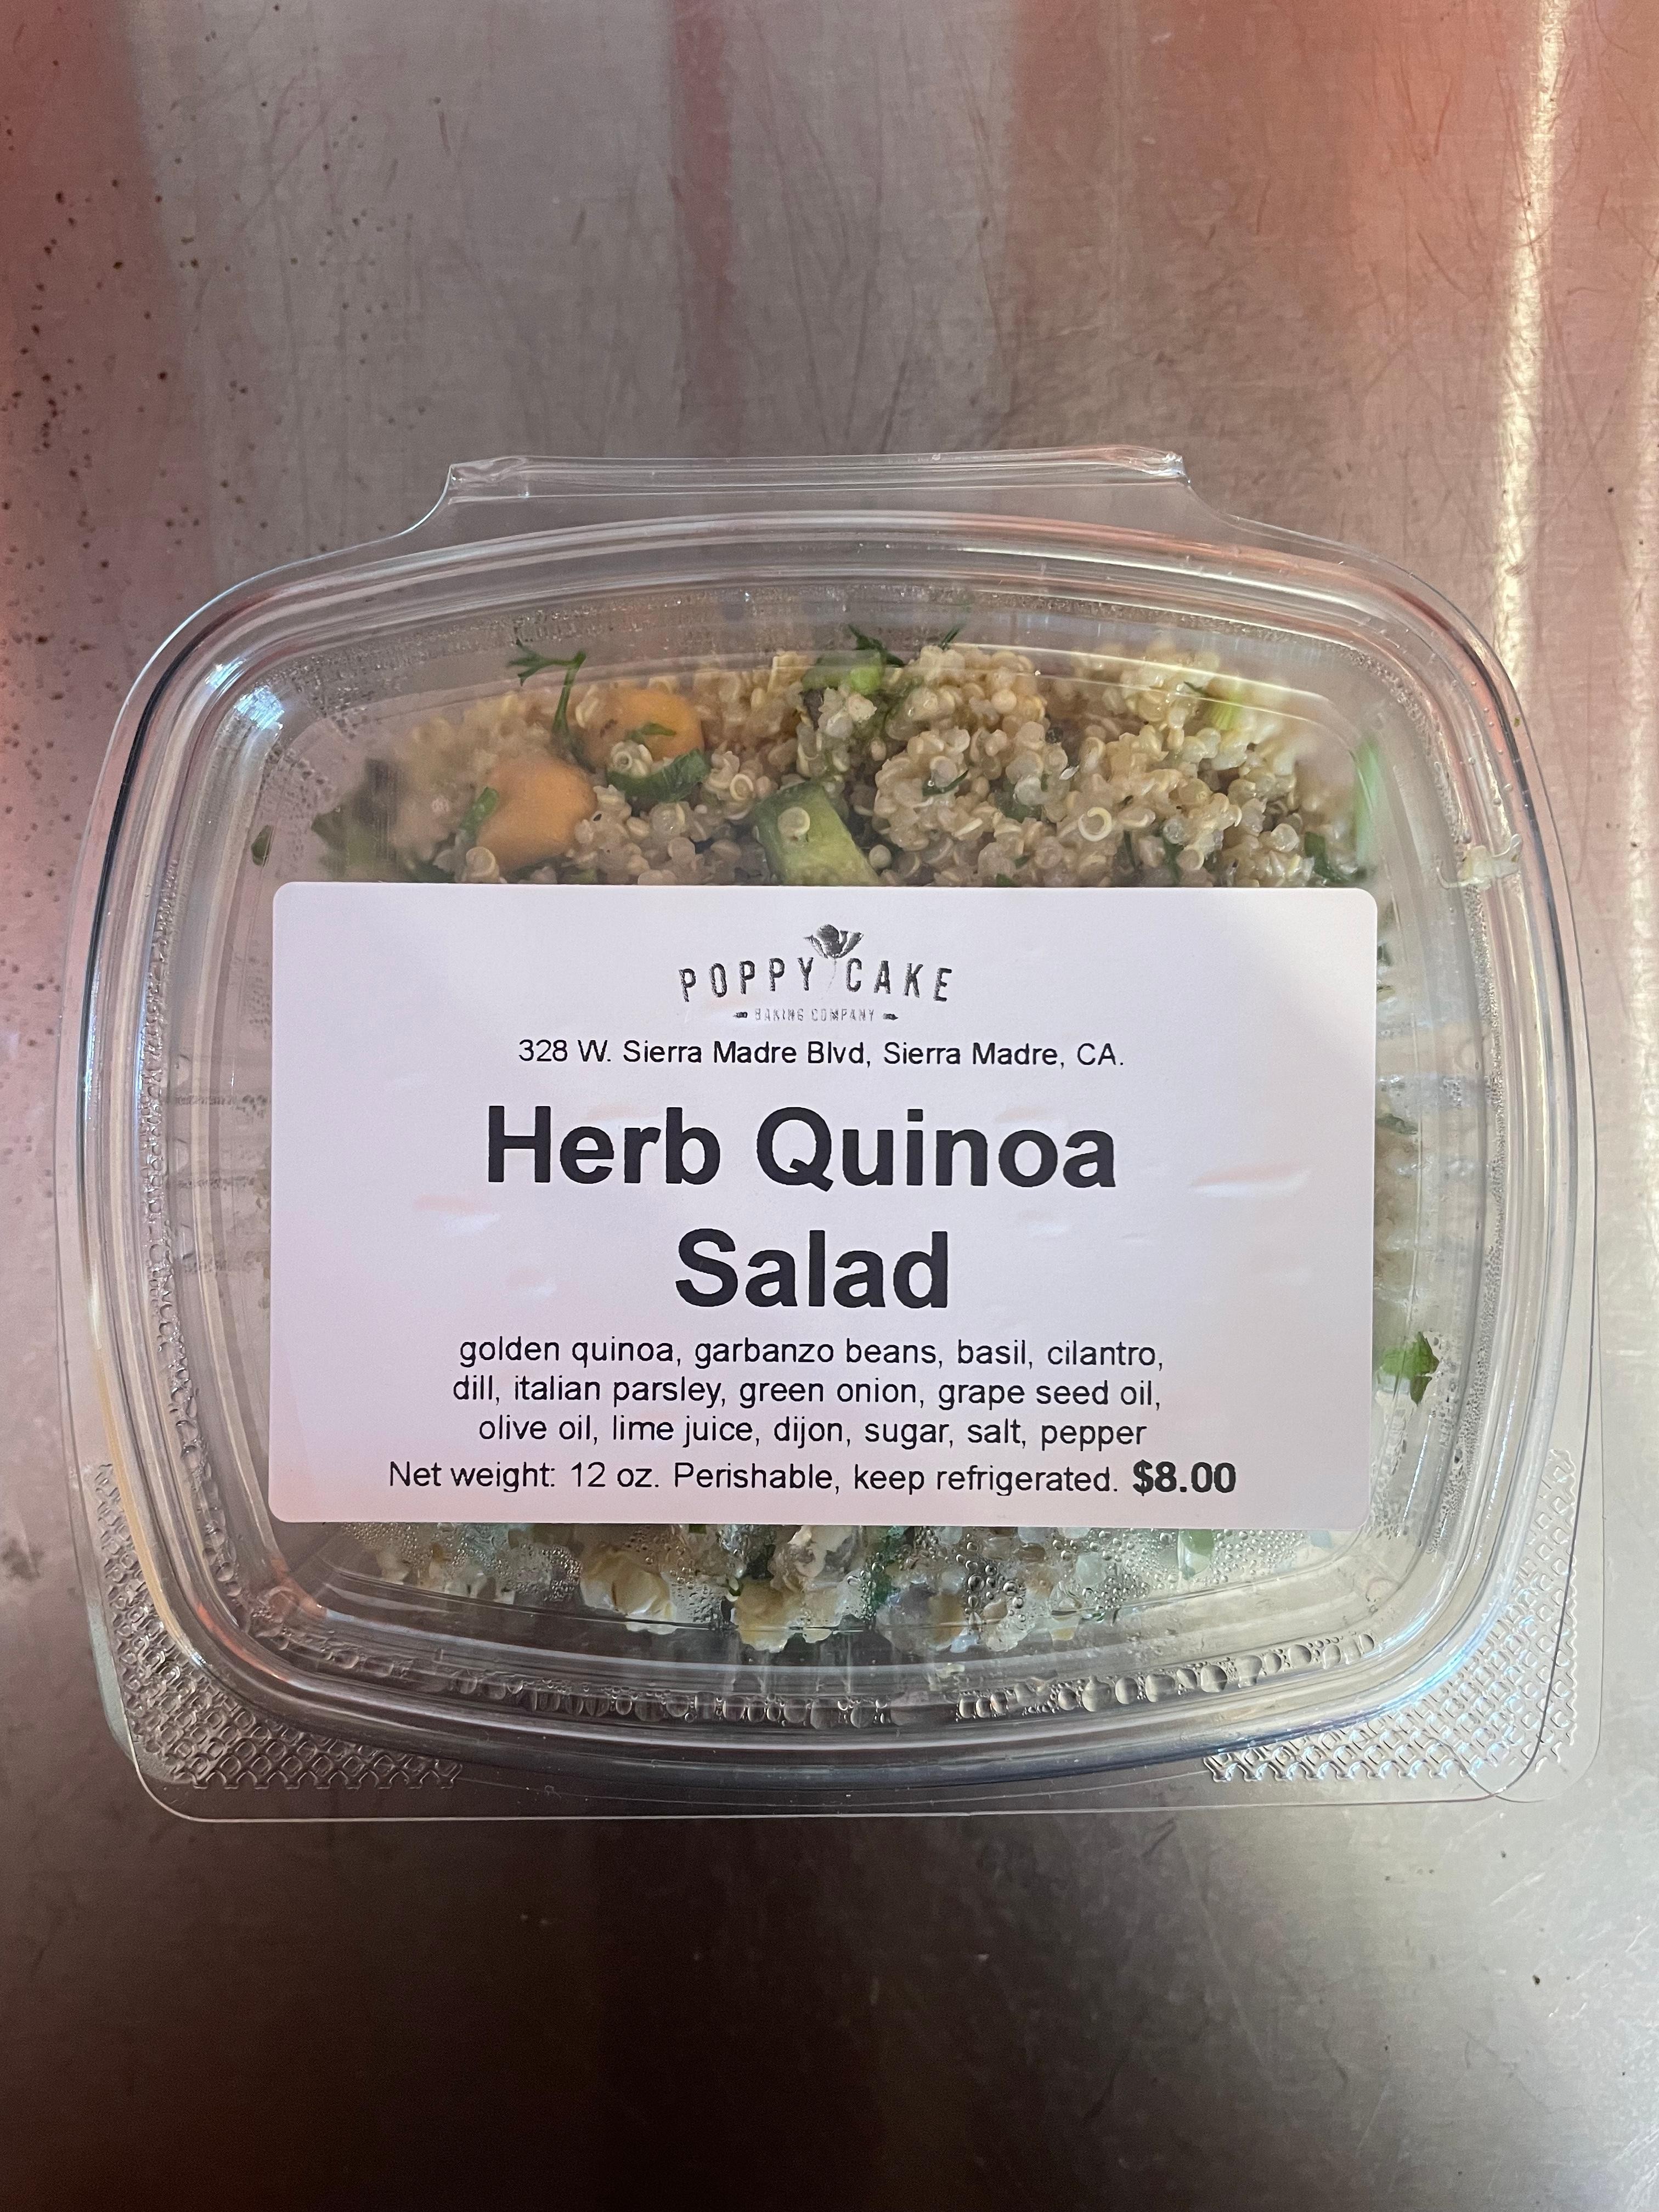 Herb Quinoa Salad